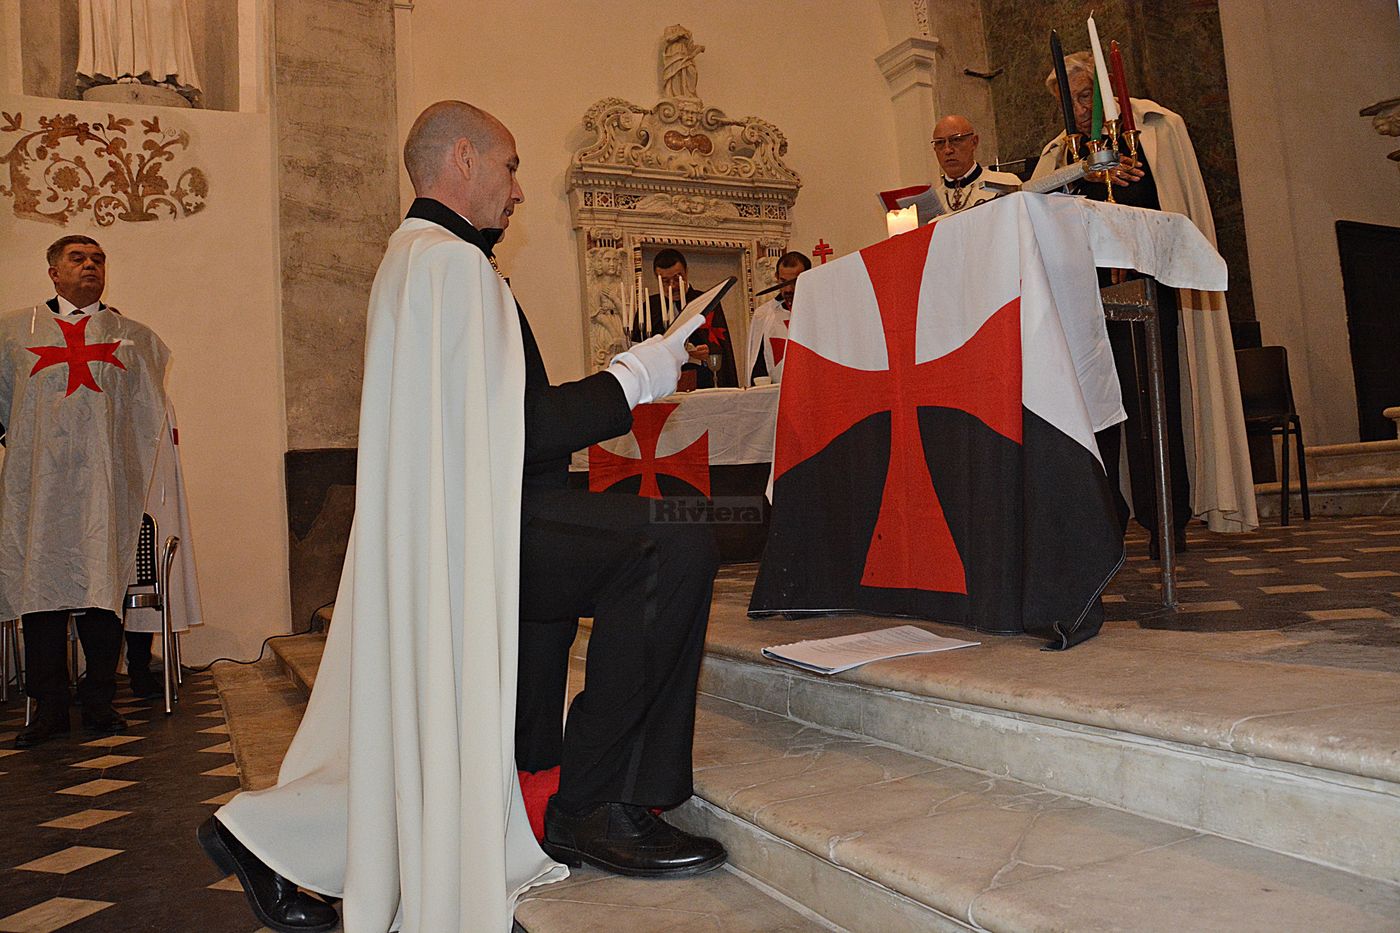 Cavalieri Templari ex chiesa San Francesco Ventimiglia 1 dicembre 2018_28